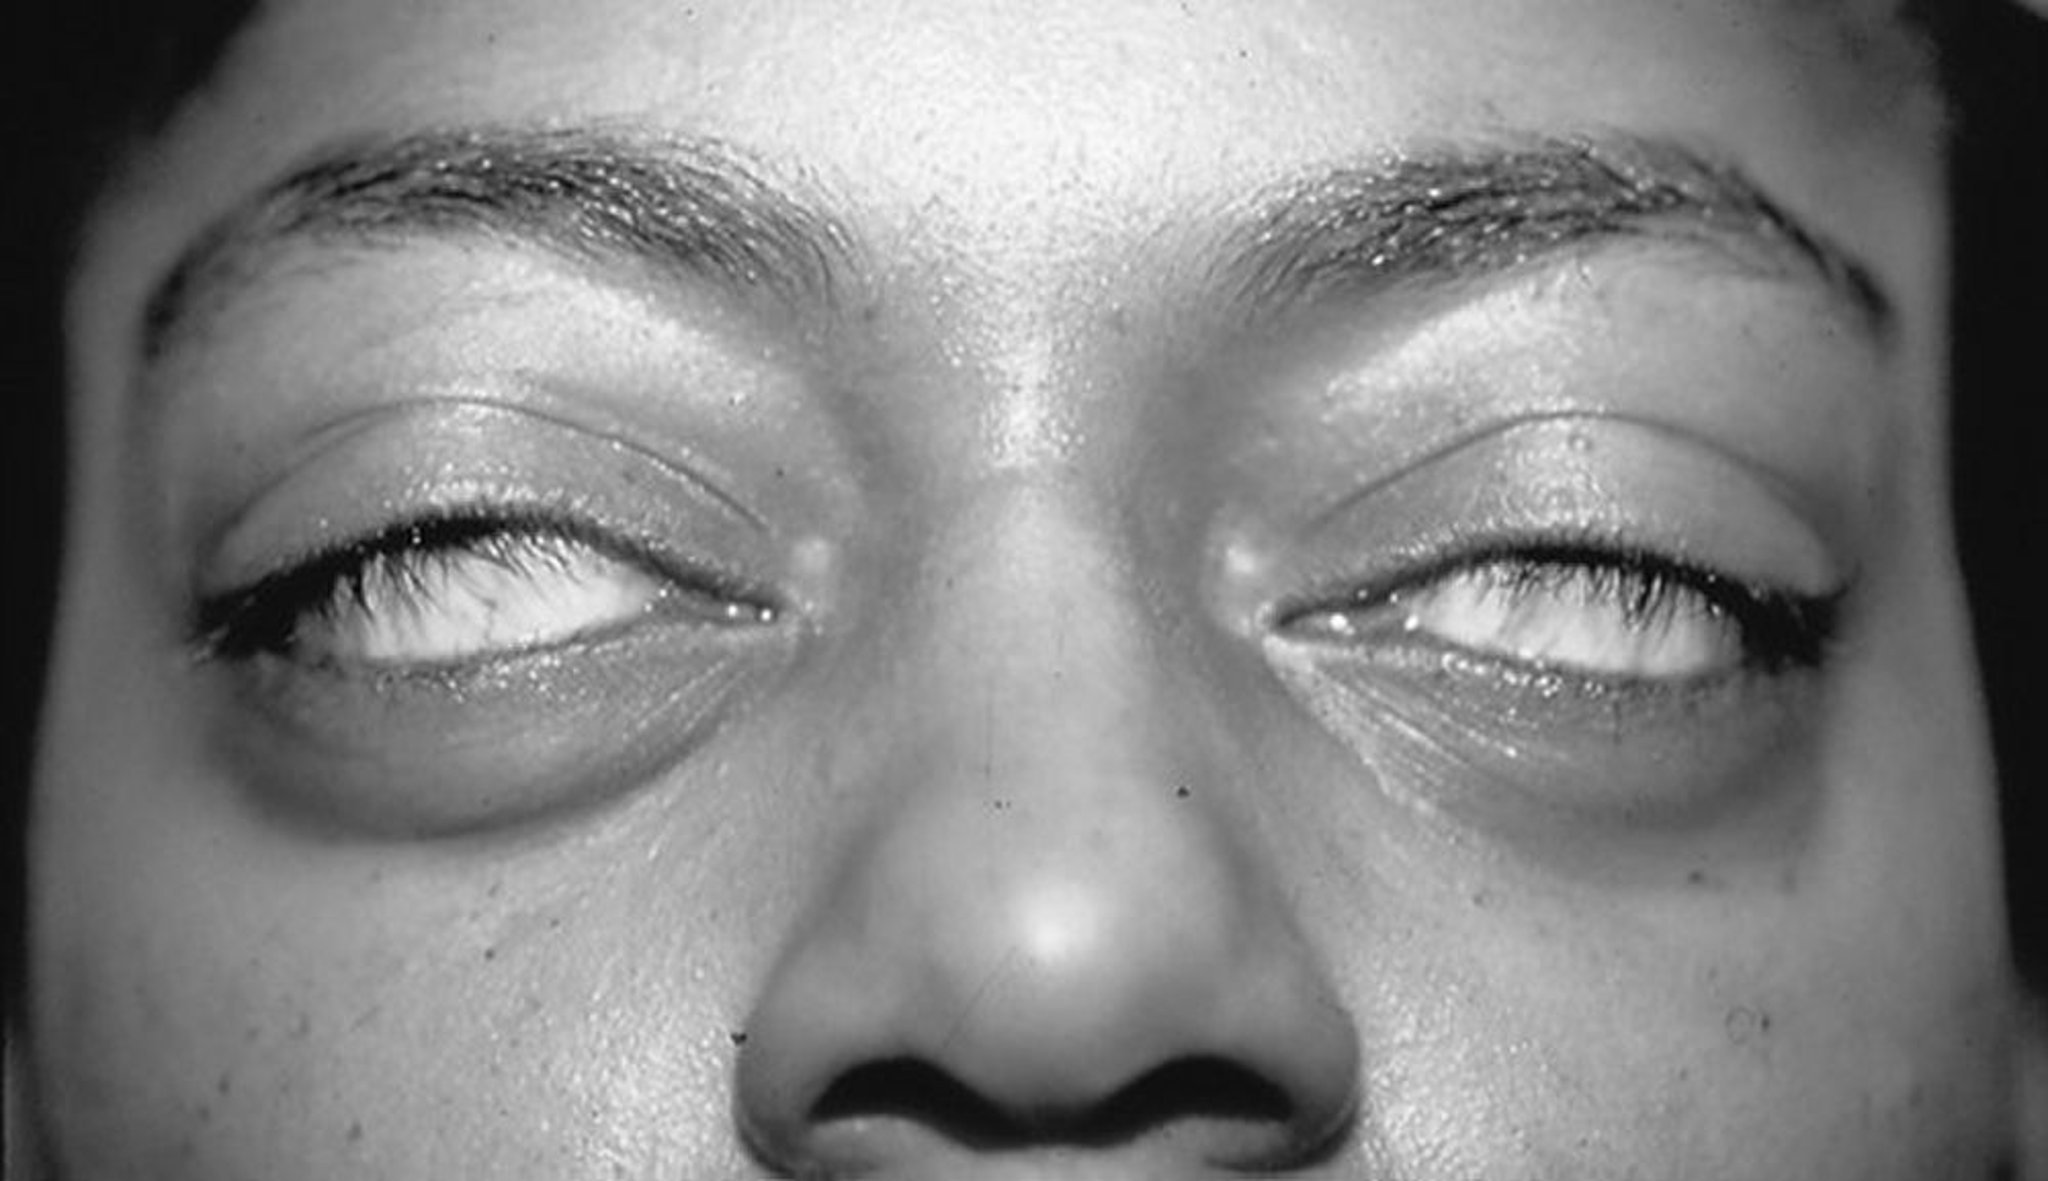 Manifestações oculares da doença de Graves — incapacidade de fechar os olhos